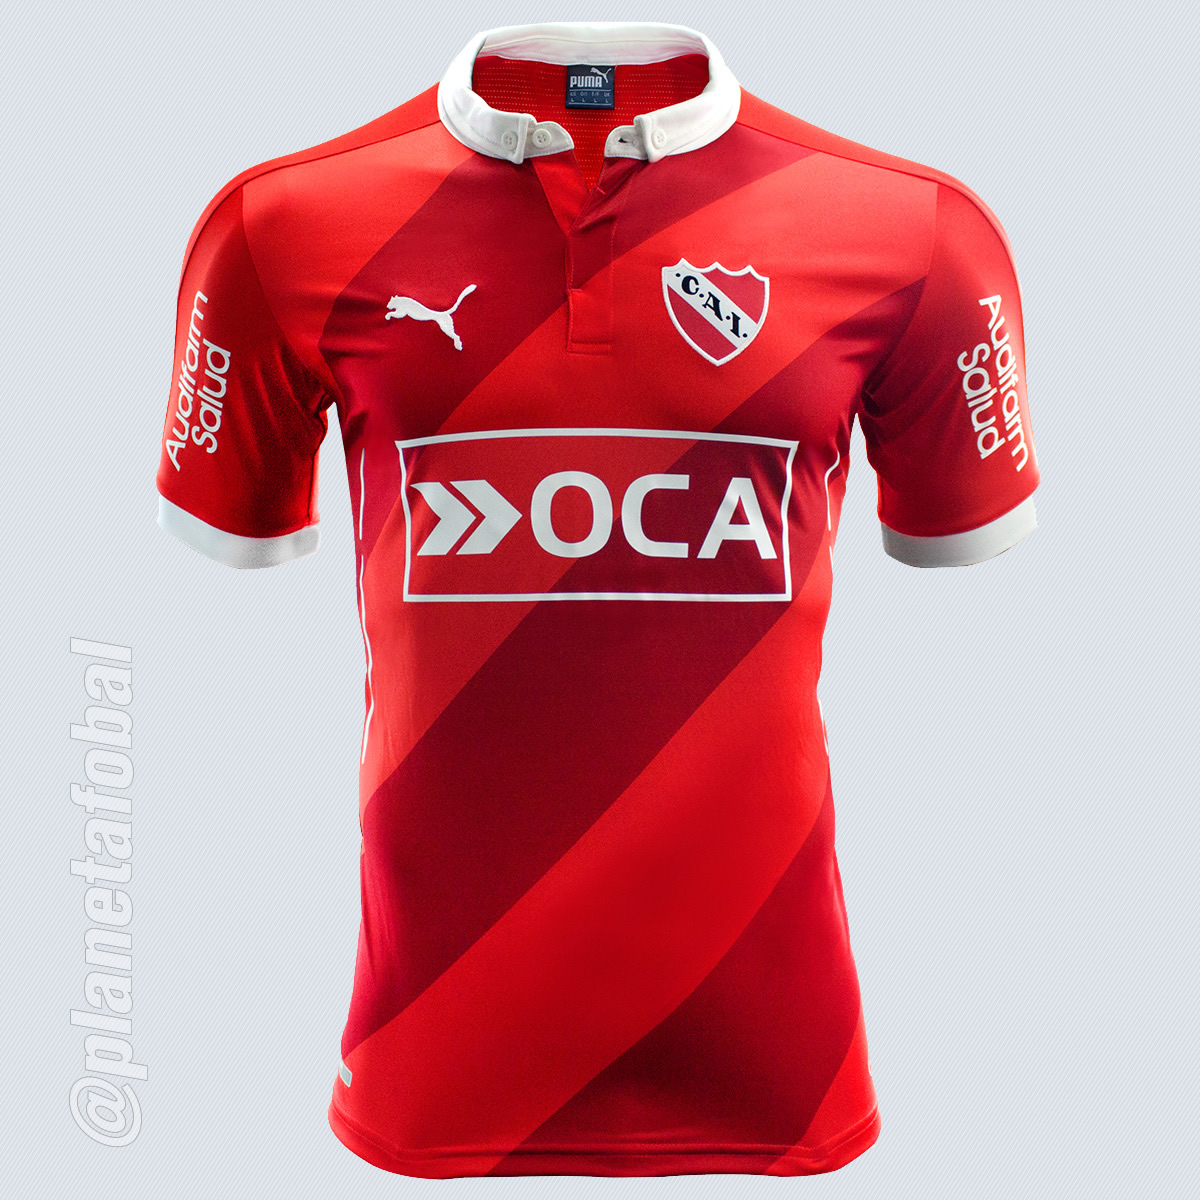 Nueva camiseta de Independiente | Foto Web Oficial